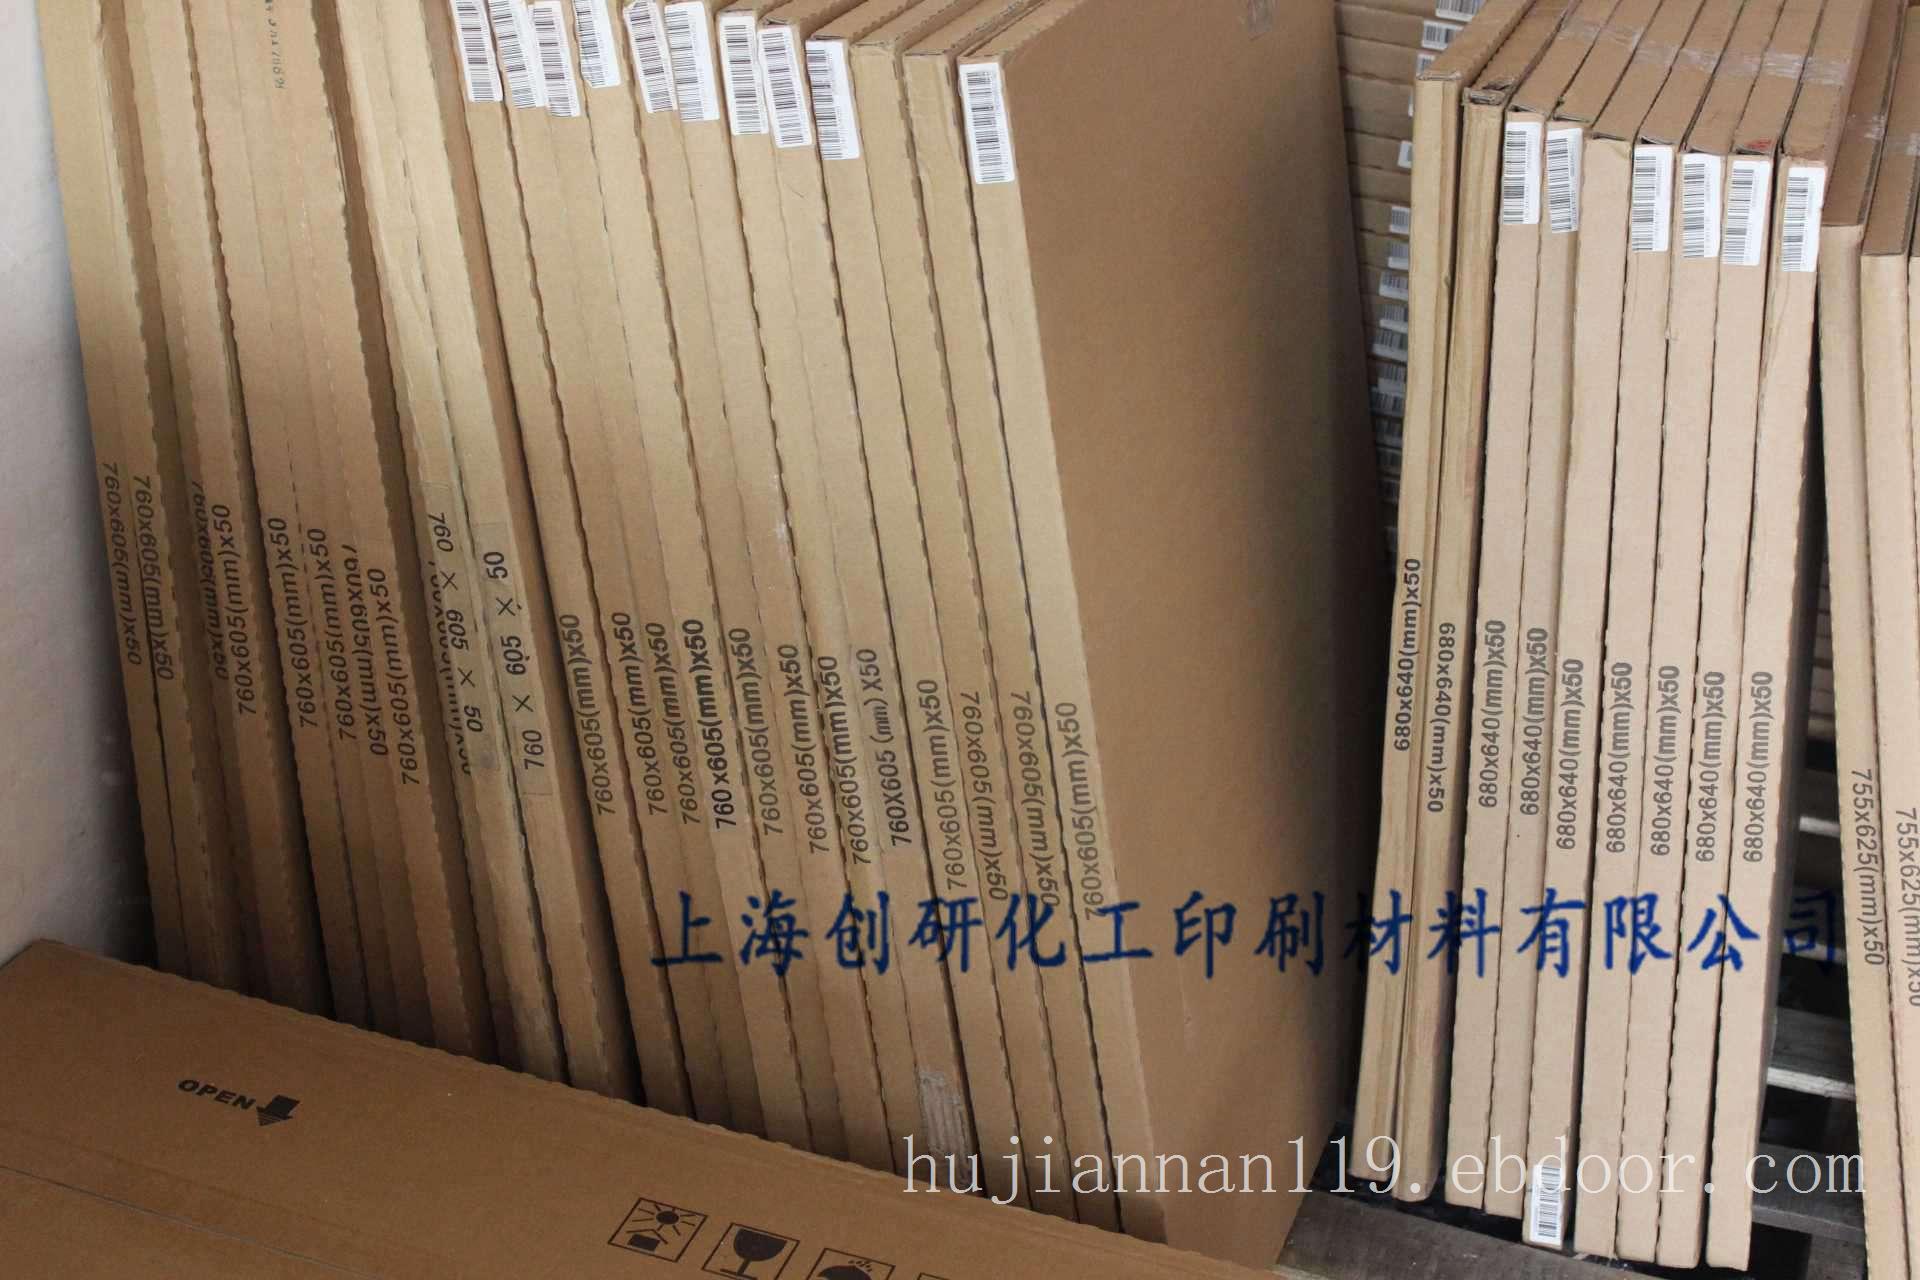 上海印刷Ps版生产 ps版的规格与价格